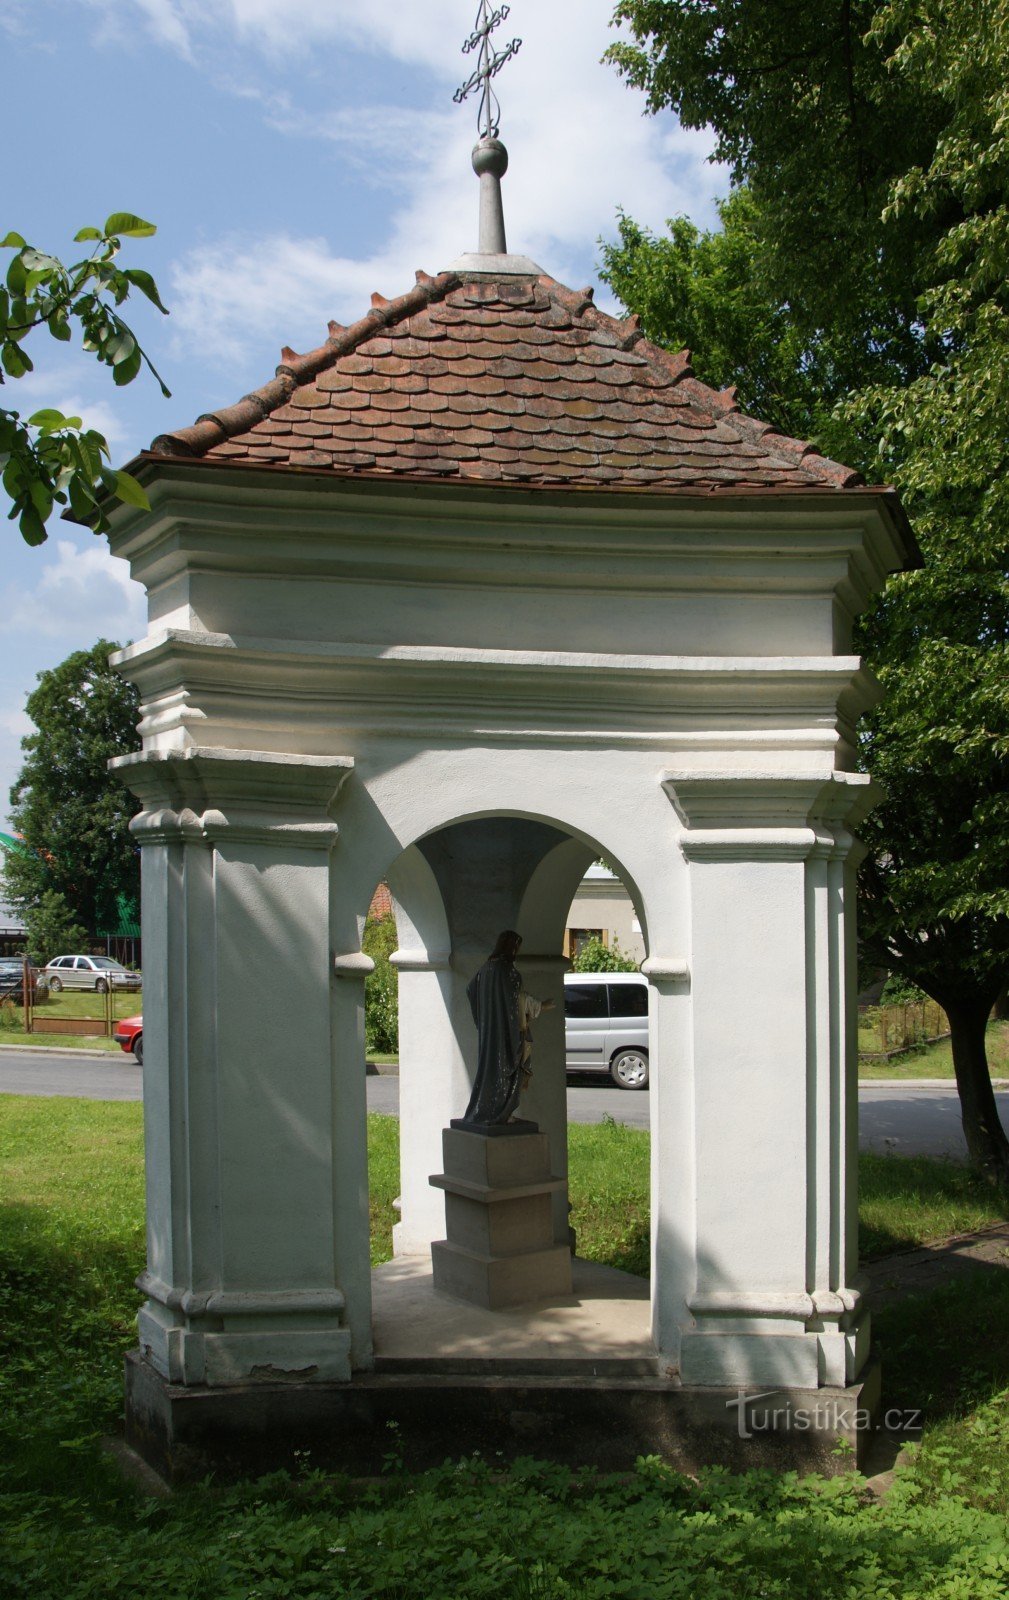 Bohemia Kosířin alla - Pyhän Tapanin kappeli. Joseph